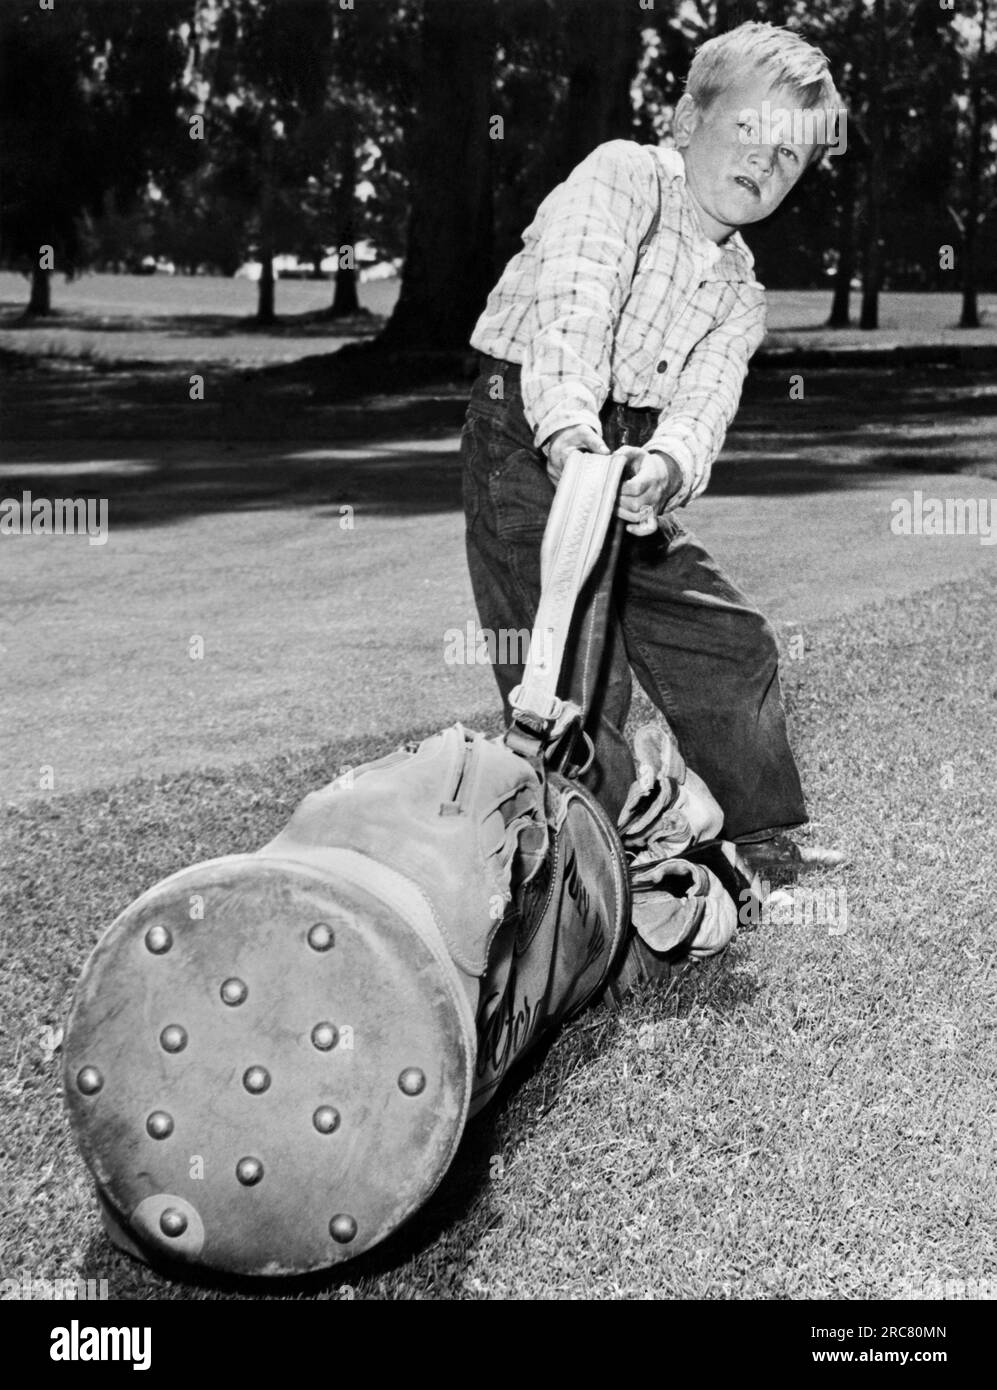 Kalifornien: ca. 1951. Dieser 5-jährige Junge hat am National Golf Day einen 216 für 18 Löcher geschossen. Entschlossenheit scheint der Name seines Spiels zu sein. Stockfoto